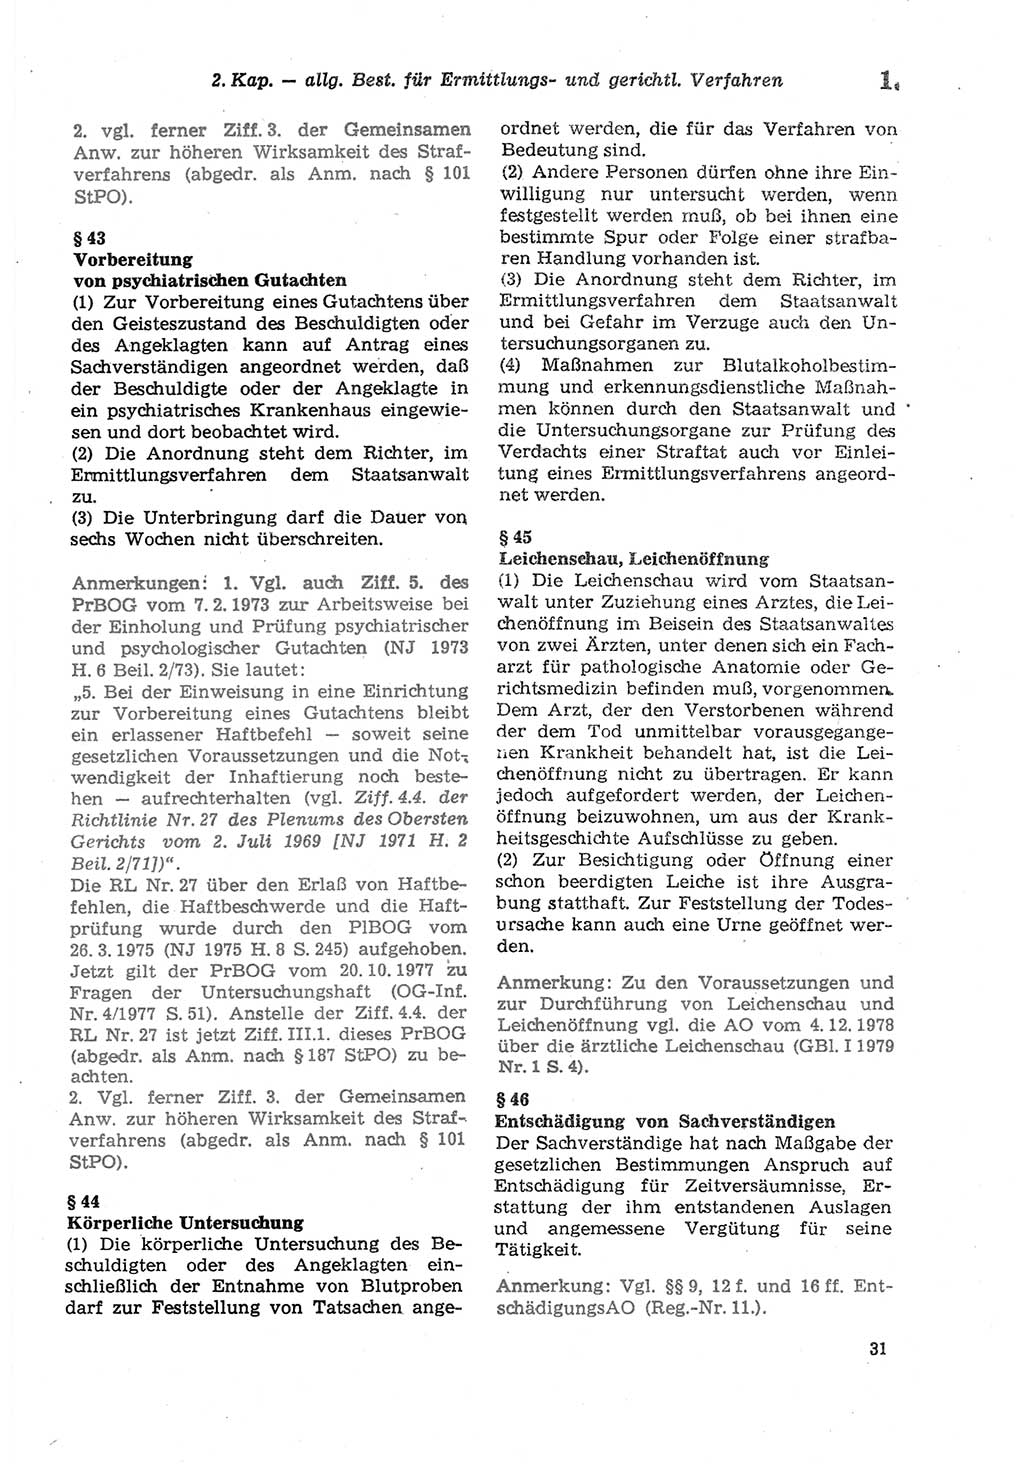 Strafprozeßordnung (StPO) der Deutschen Demokratischen Republik (DDR) sowie angrenzende Gesetze und Bestimmungen 1979, Seite 31 (StPO DDR Ges. Best. 1979, S. 31)